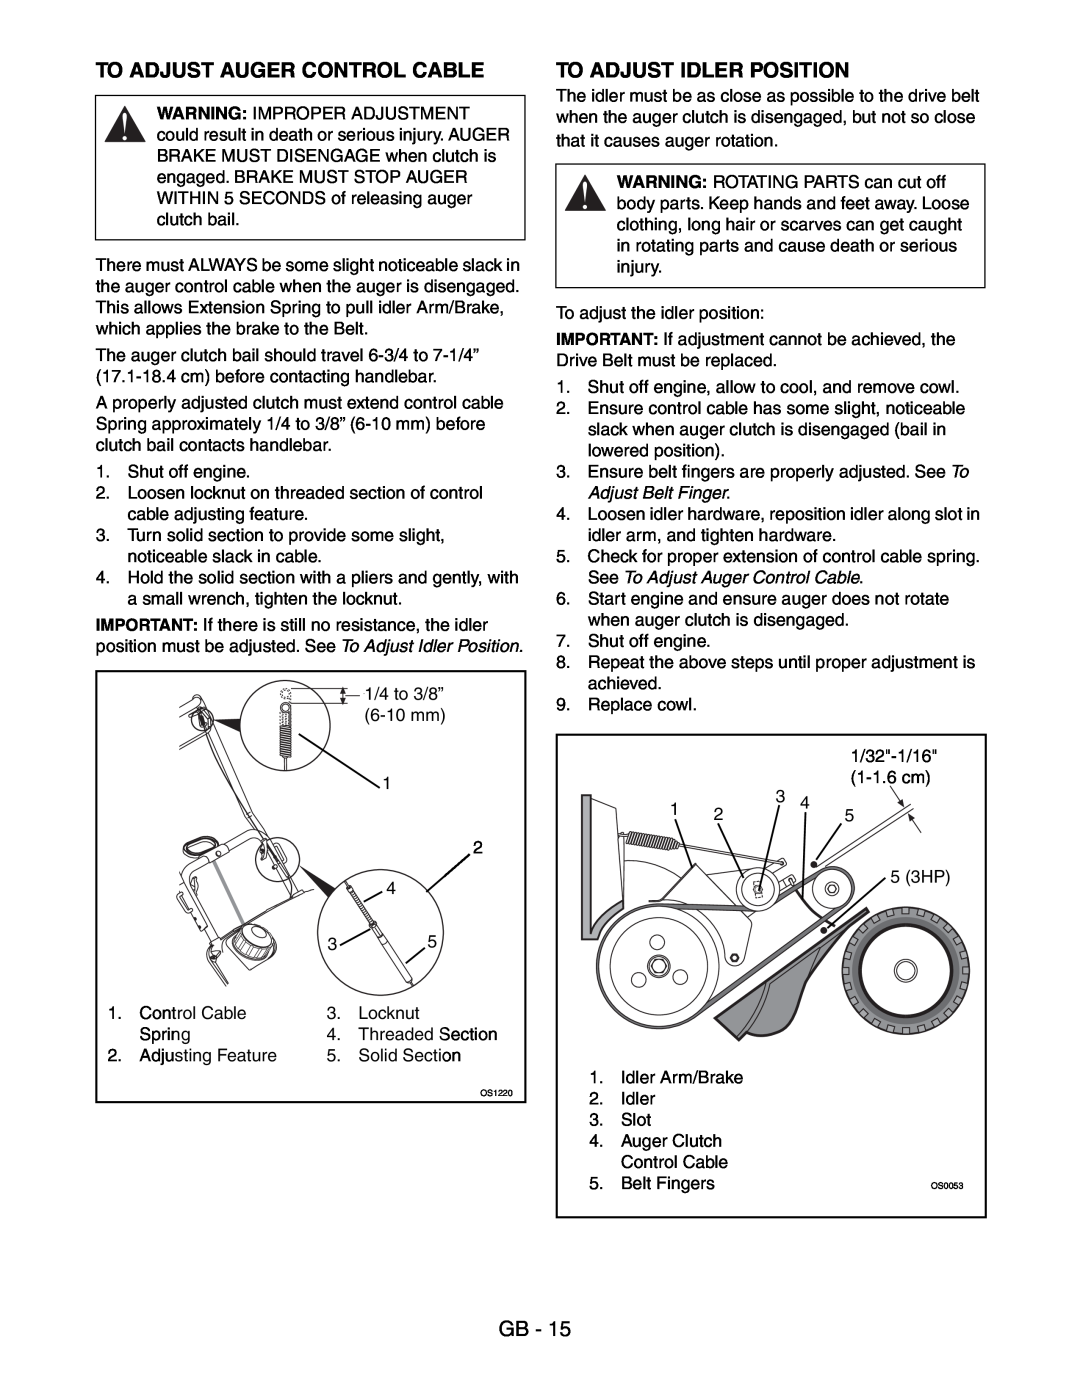 Ariens 938016 - 522 manual To Adjust Auger Control Cable, To Adjust Idler Position, Adjust Belt Finger 